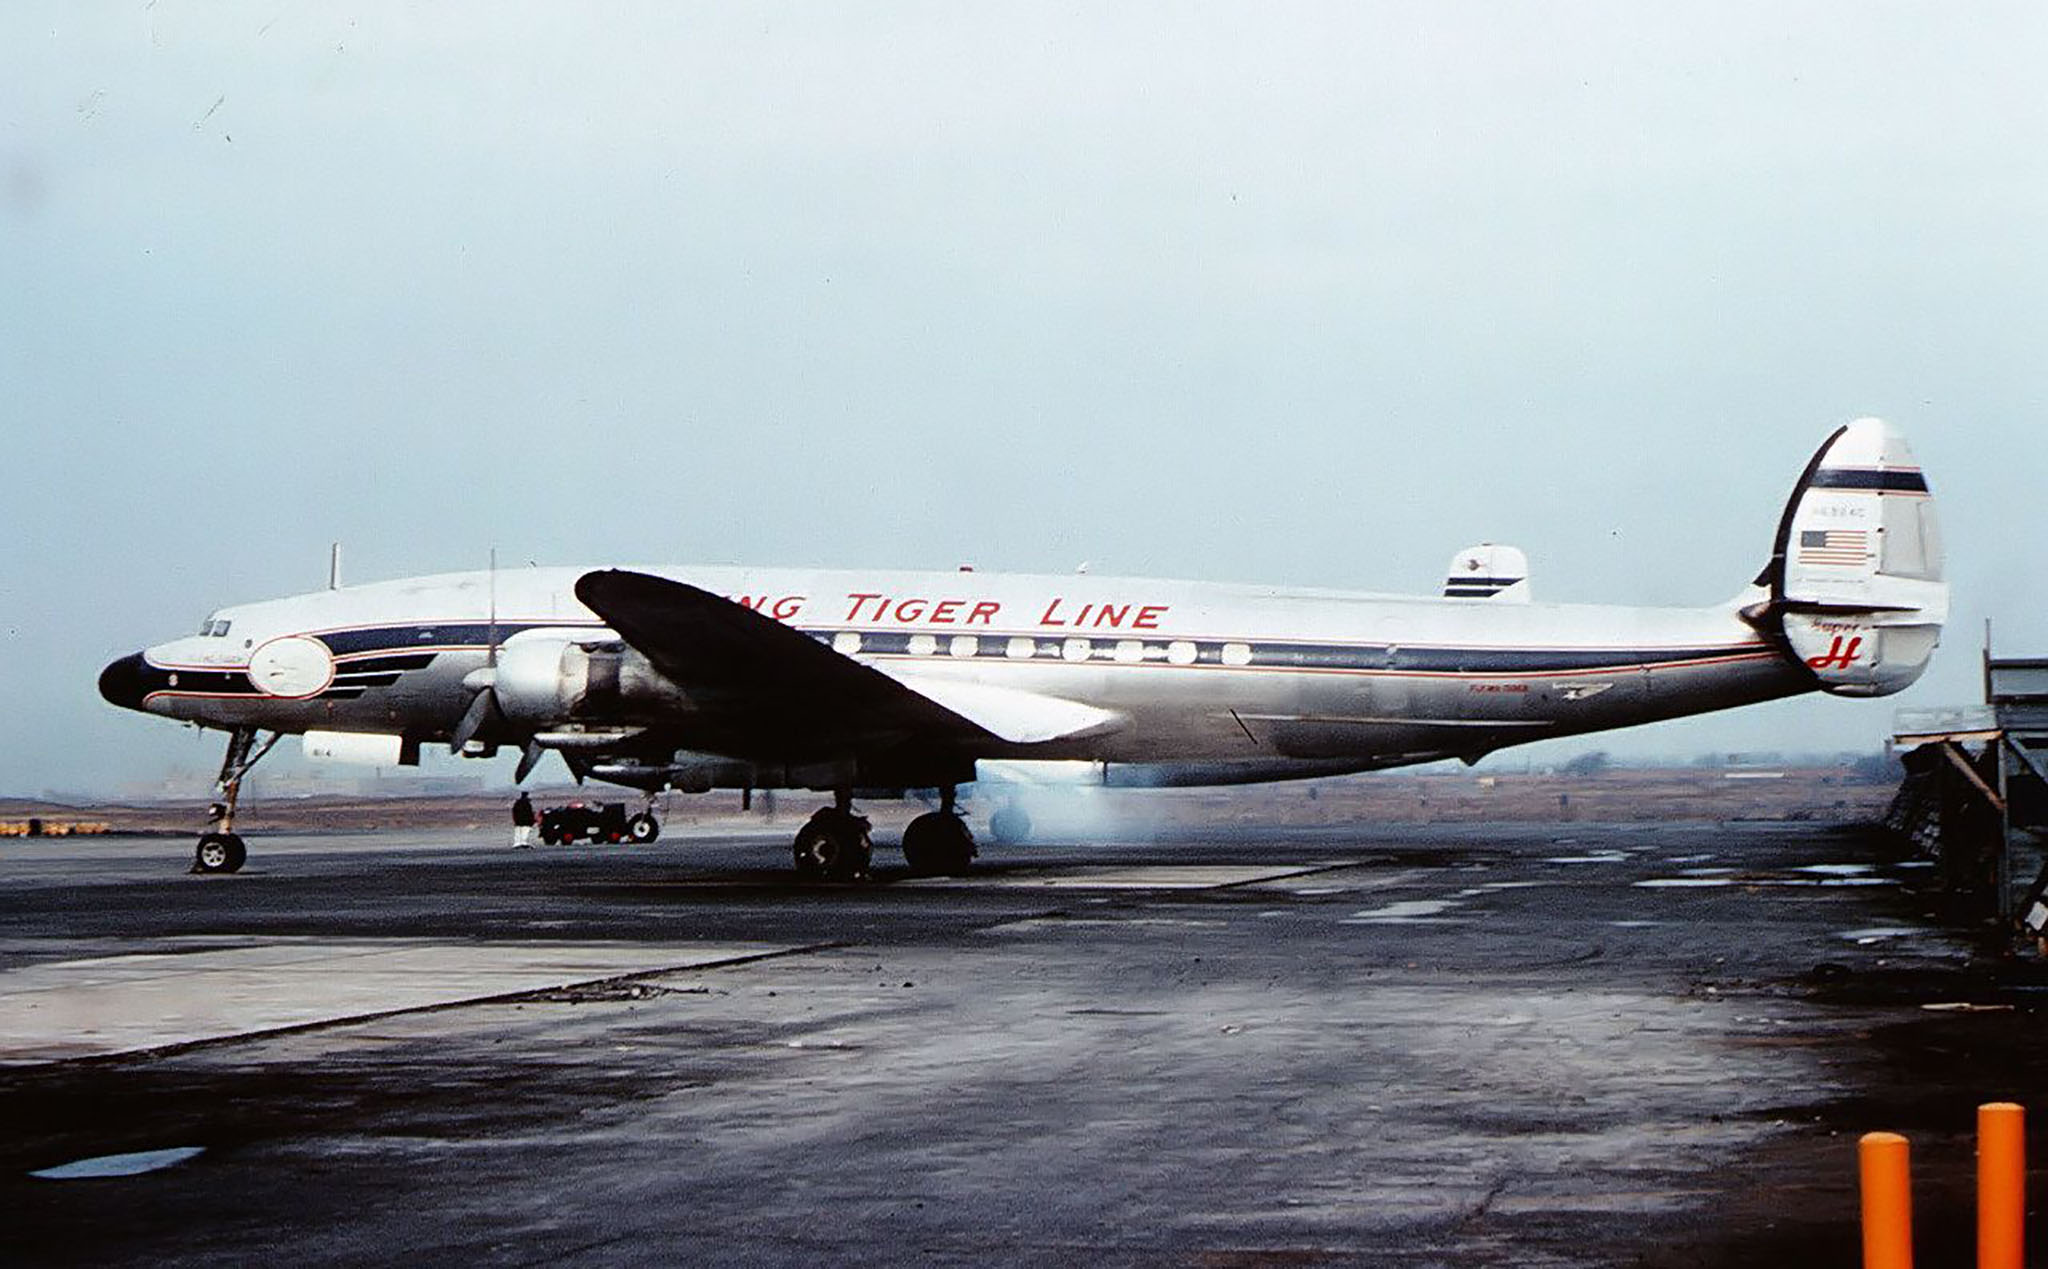 Chiếc máy bay này cùng 107 người đã mất tích bí ẩn đúng 59 năm trước khi đang trên đường đến Sài Gòn